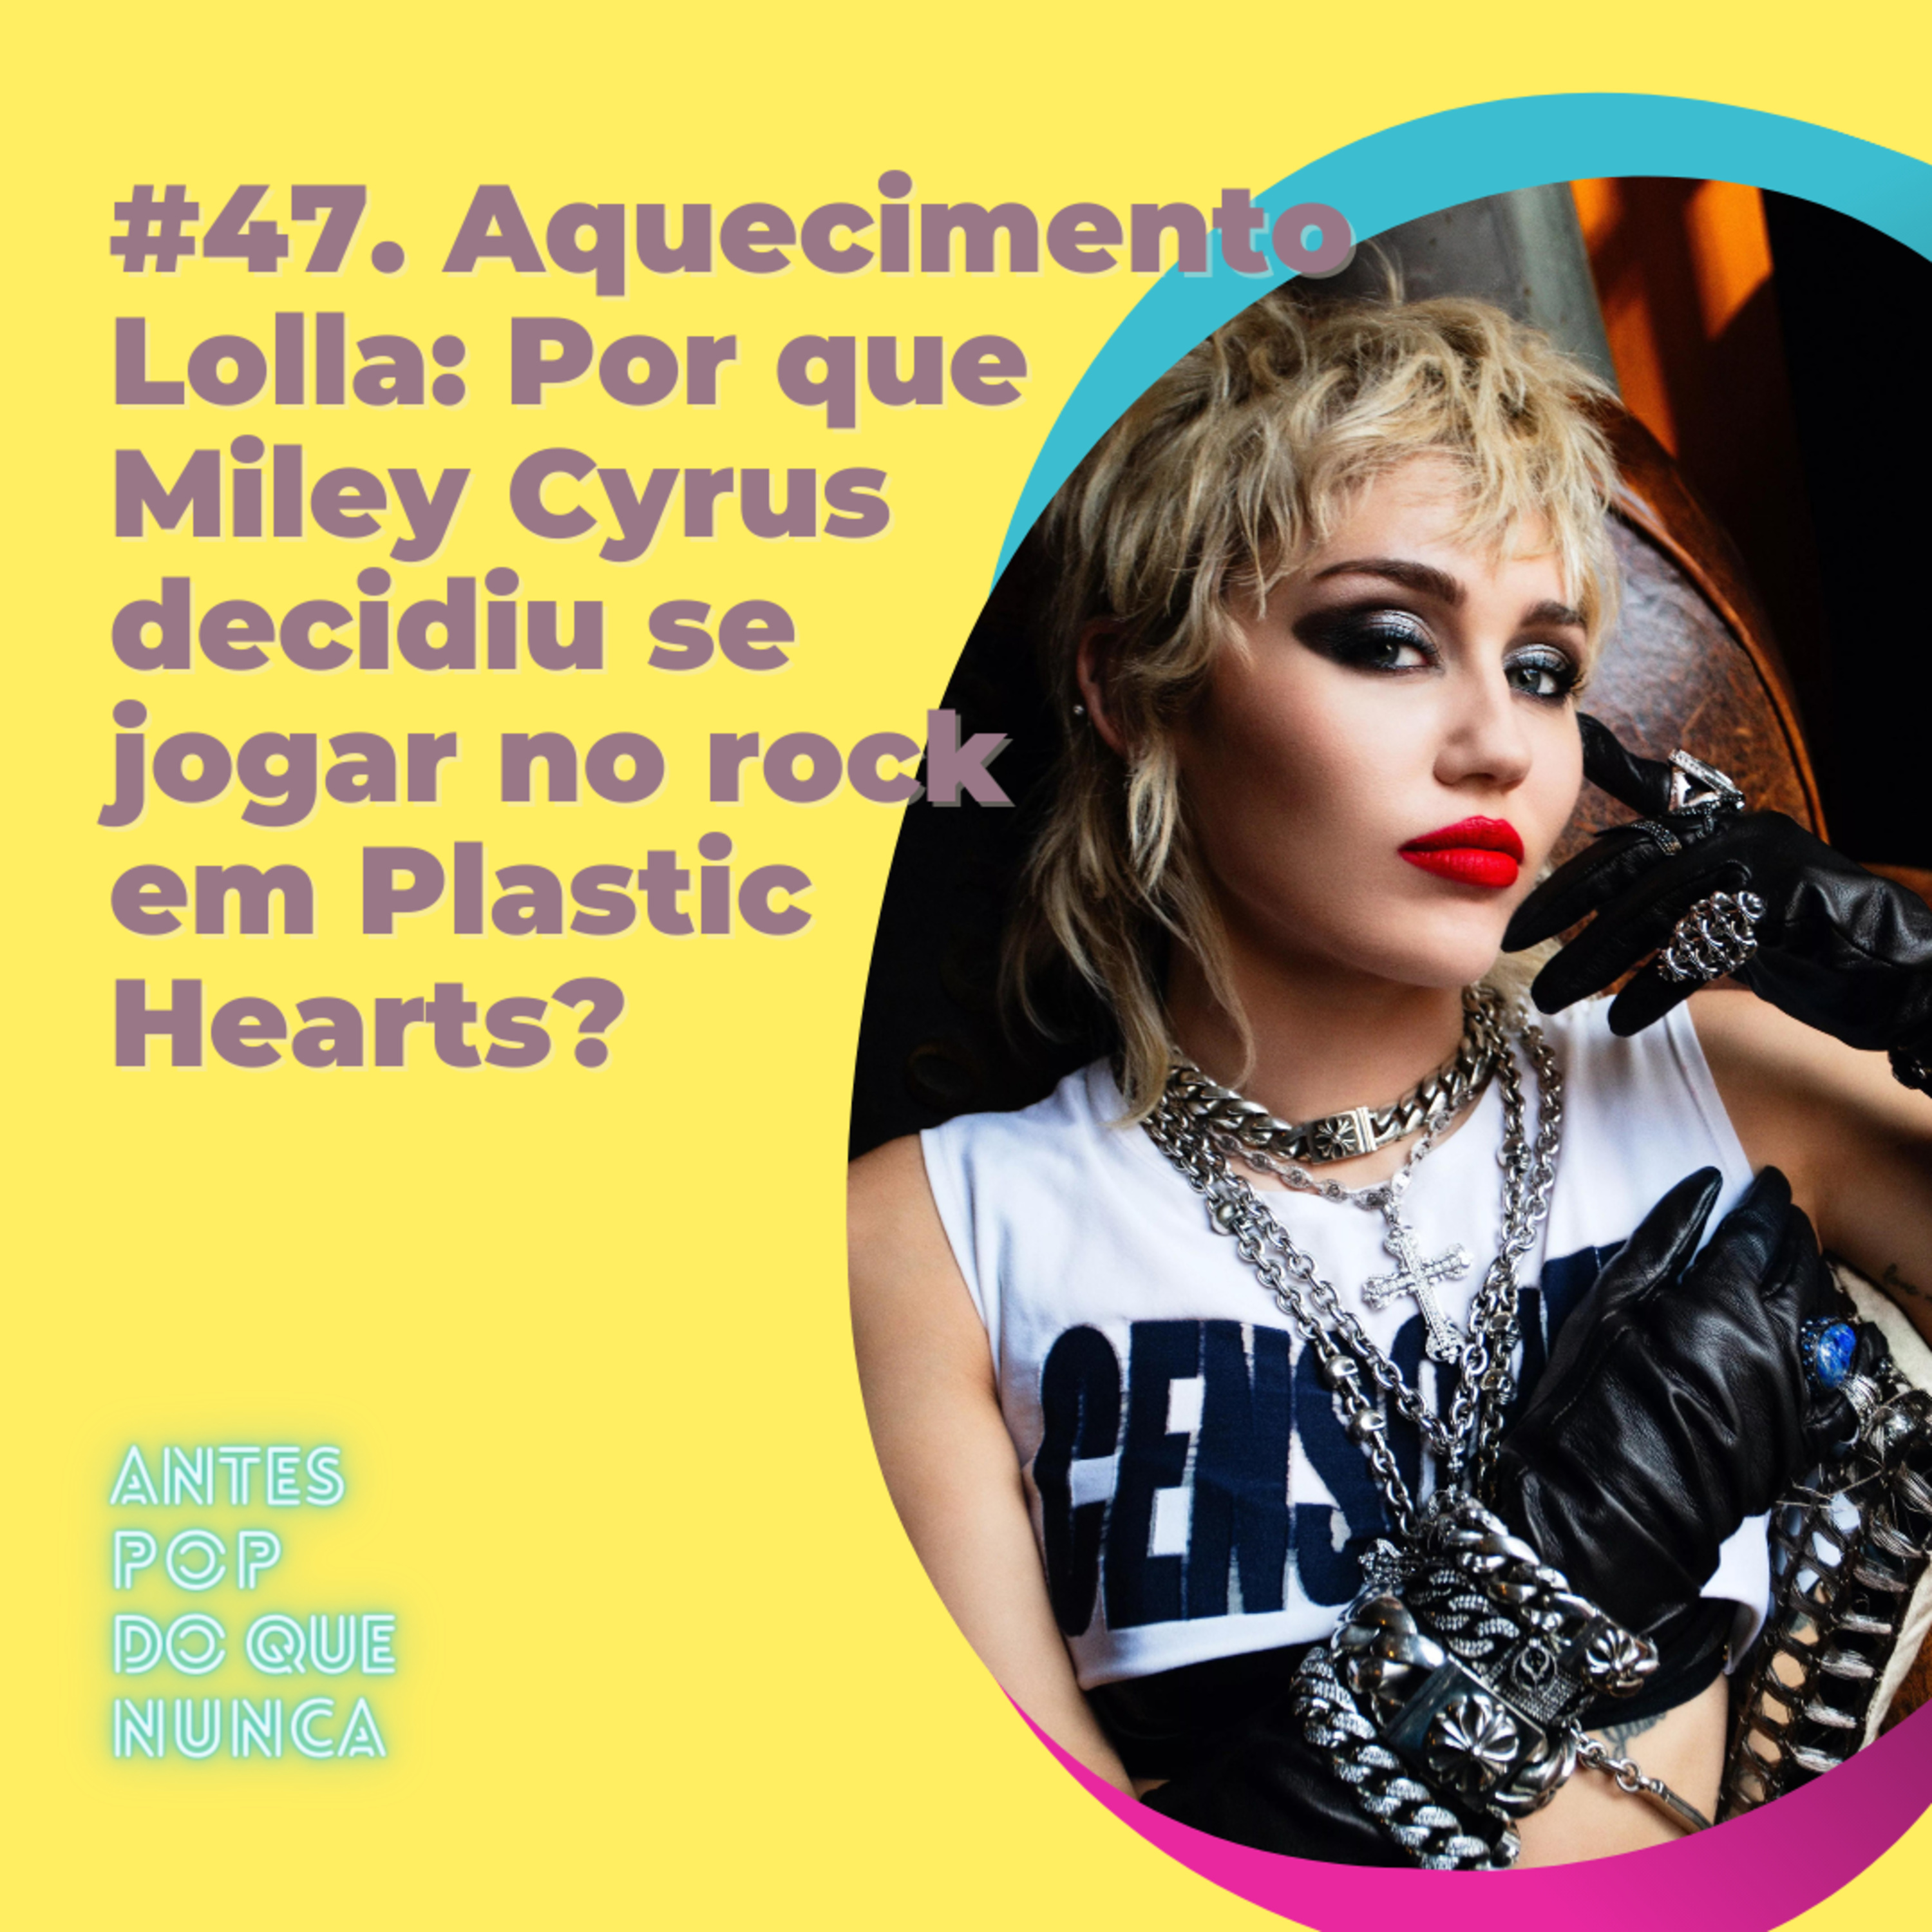 #47. Aquecimento Lolla: Por que Miley Cyrus decidiu se jogar no rock em Plastic Hearts?